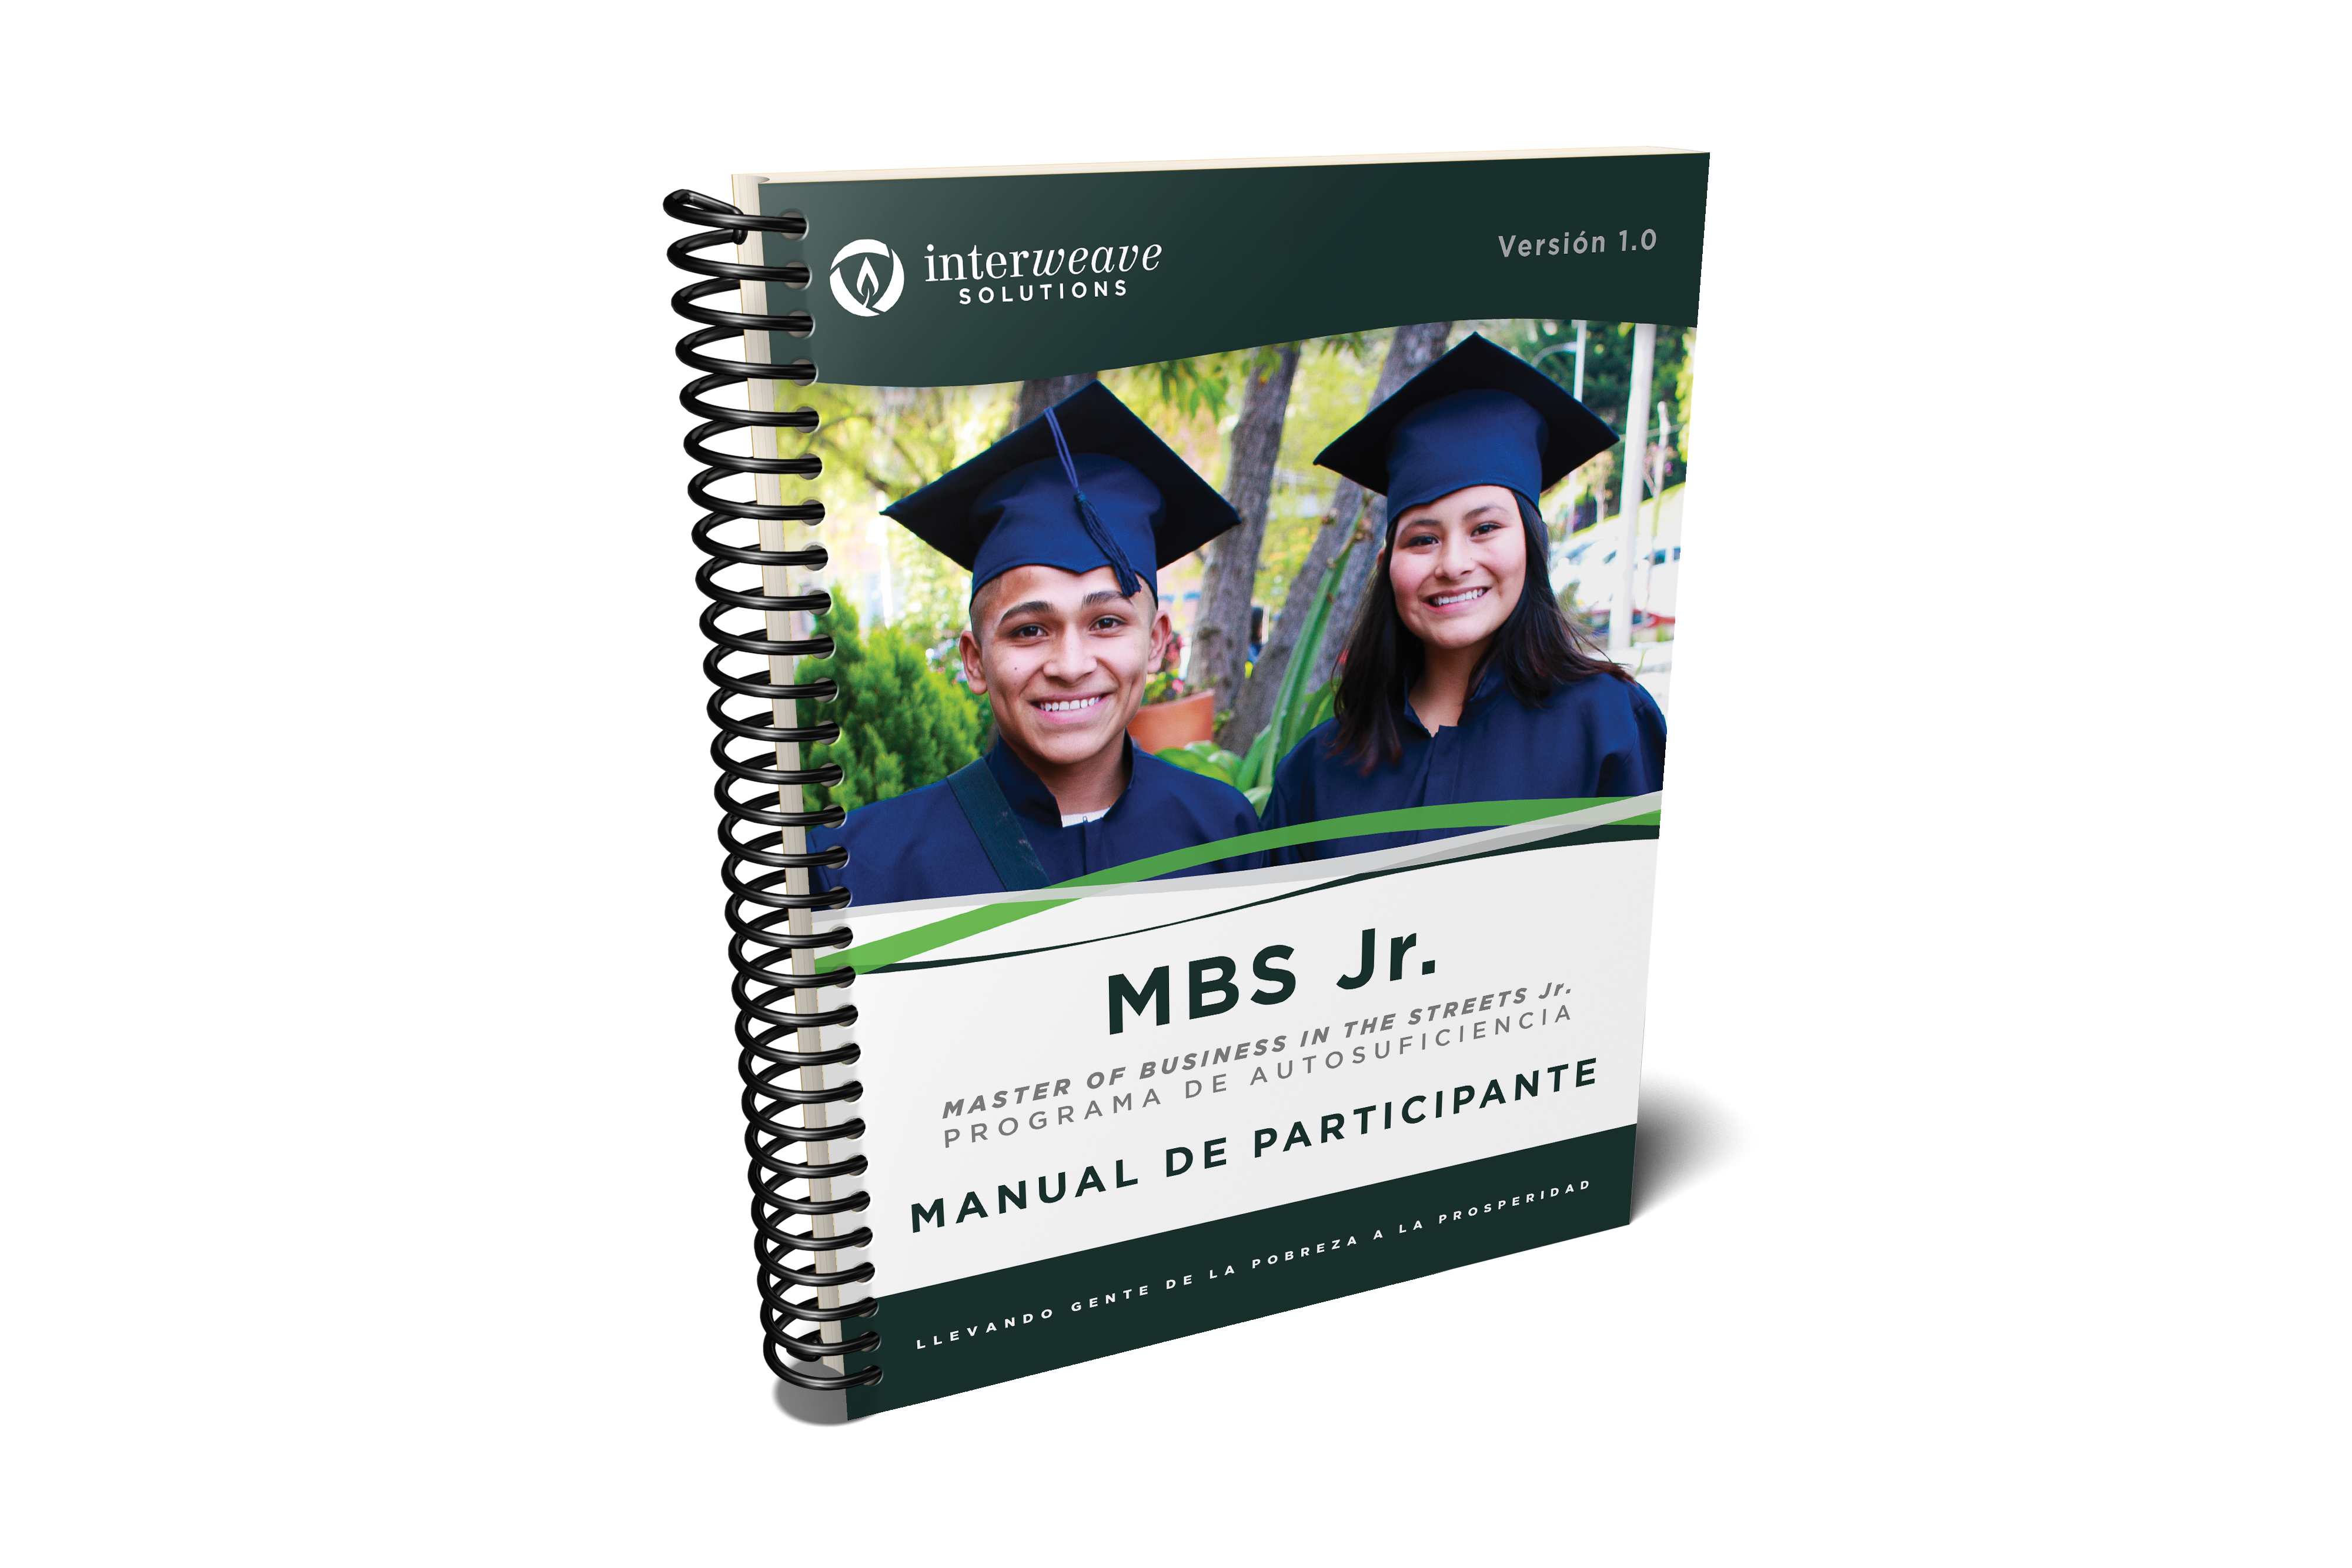 Para descargar el MBS Jr. Manual de Participante haga clic aquí.